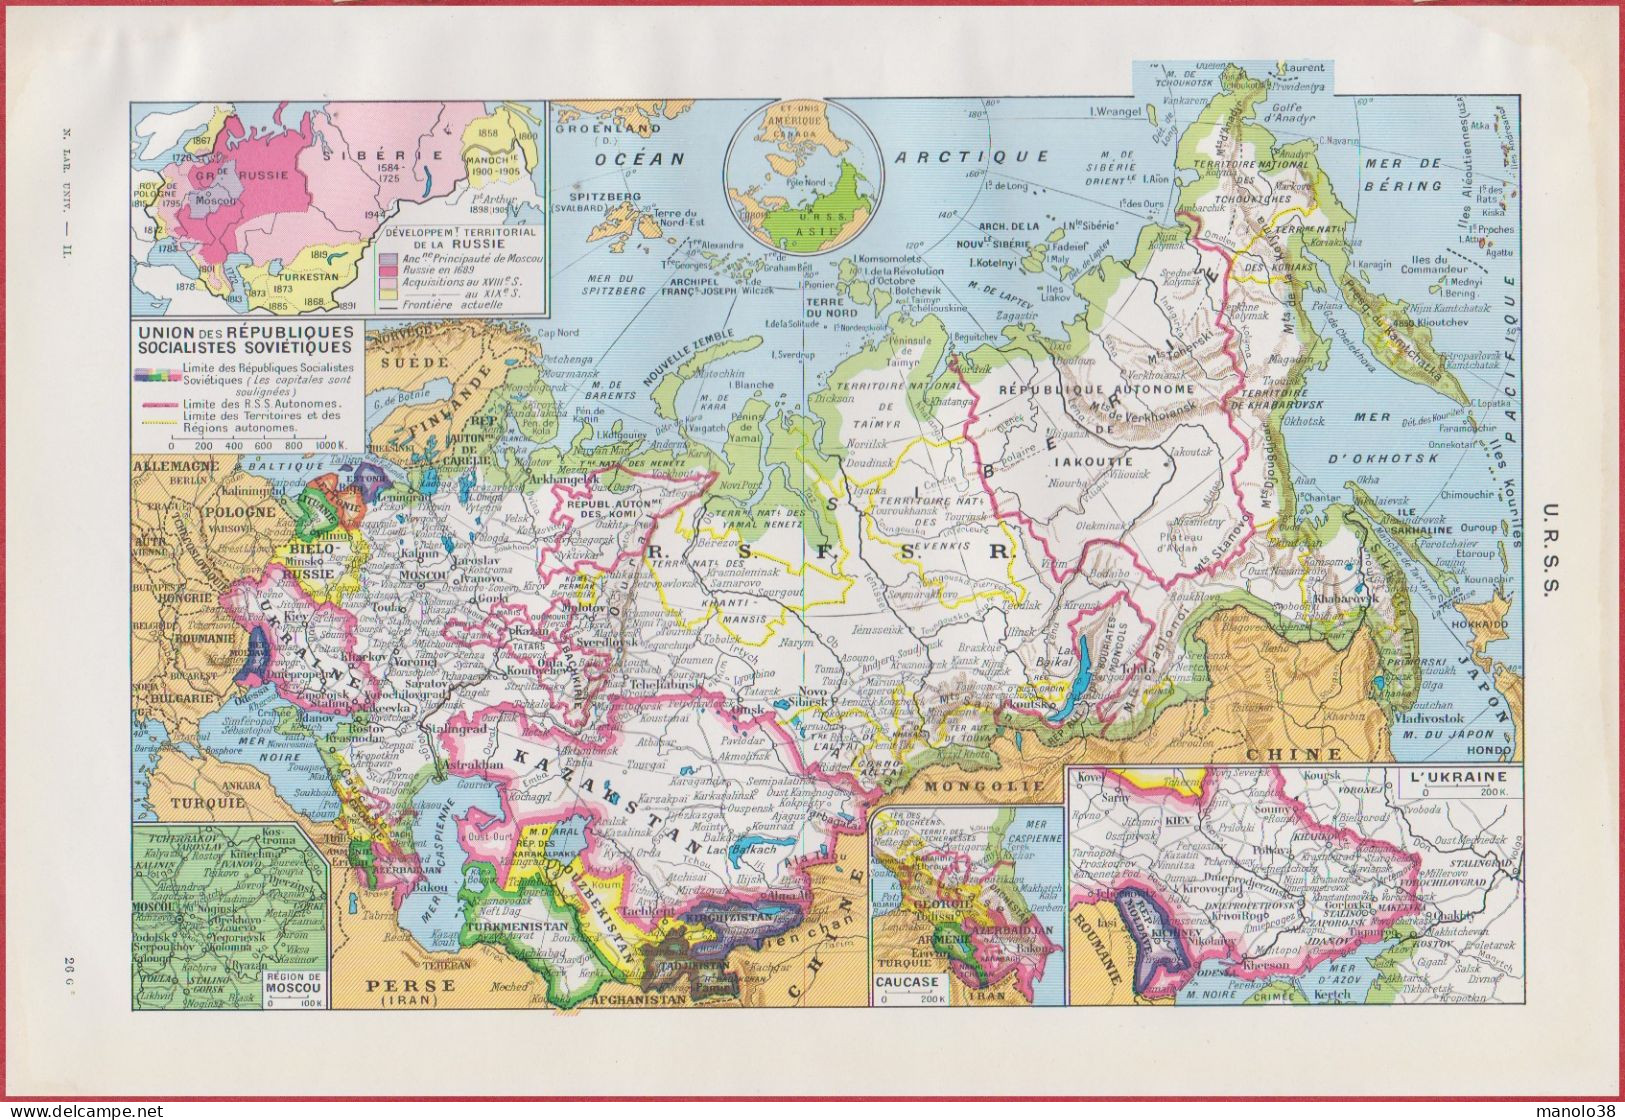 Carte De L'URSS. Russie. Ukraine. Développement Territorial. Carte économique. Divers Vues. Larousse 1948. - Documents Historiques